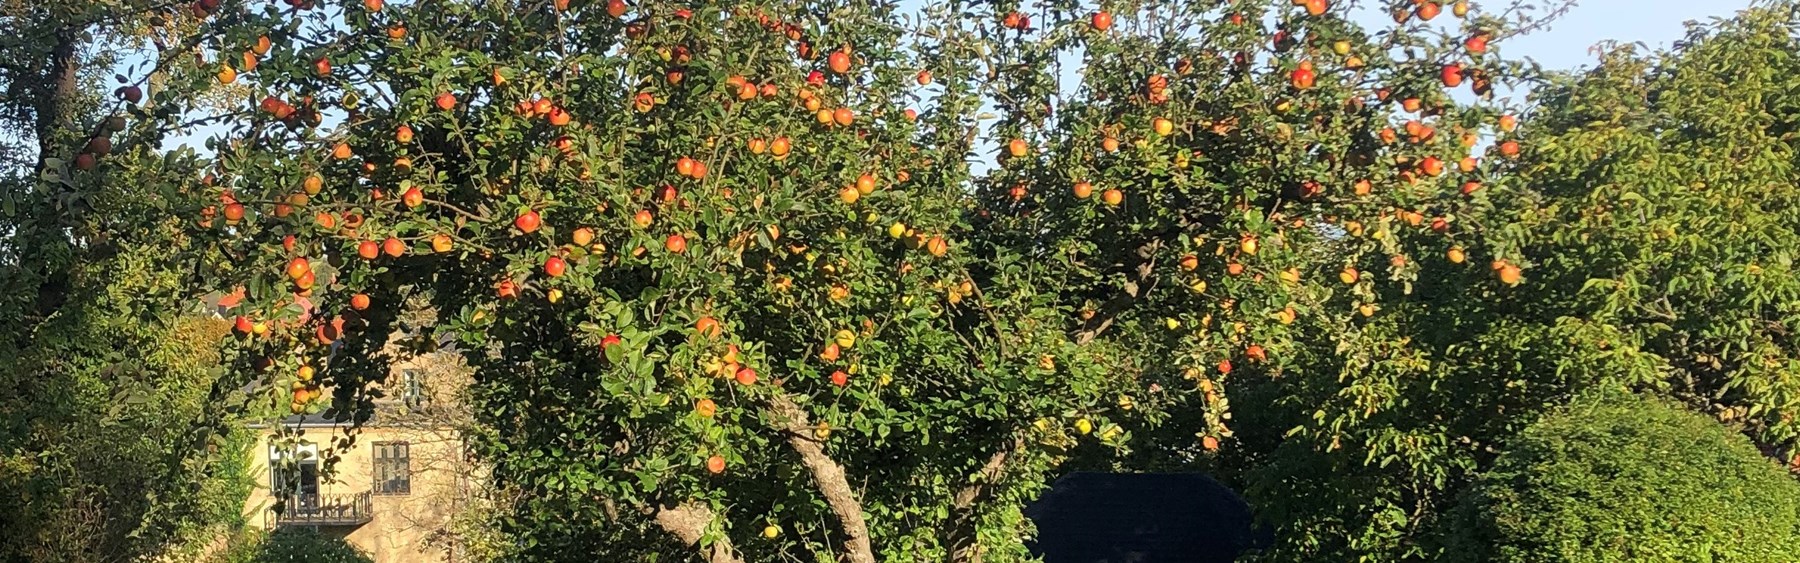 Æbletræ